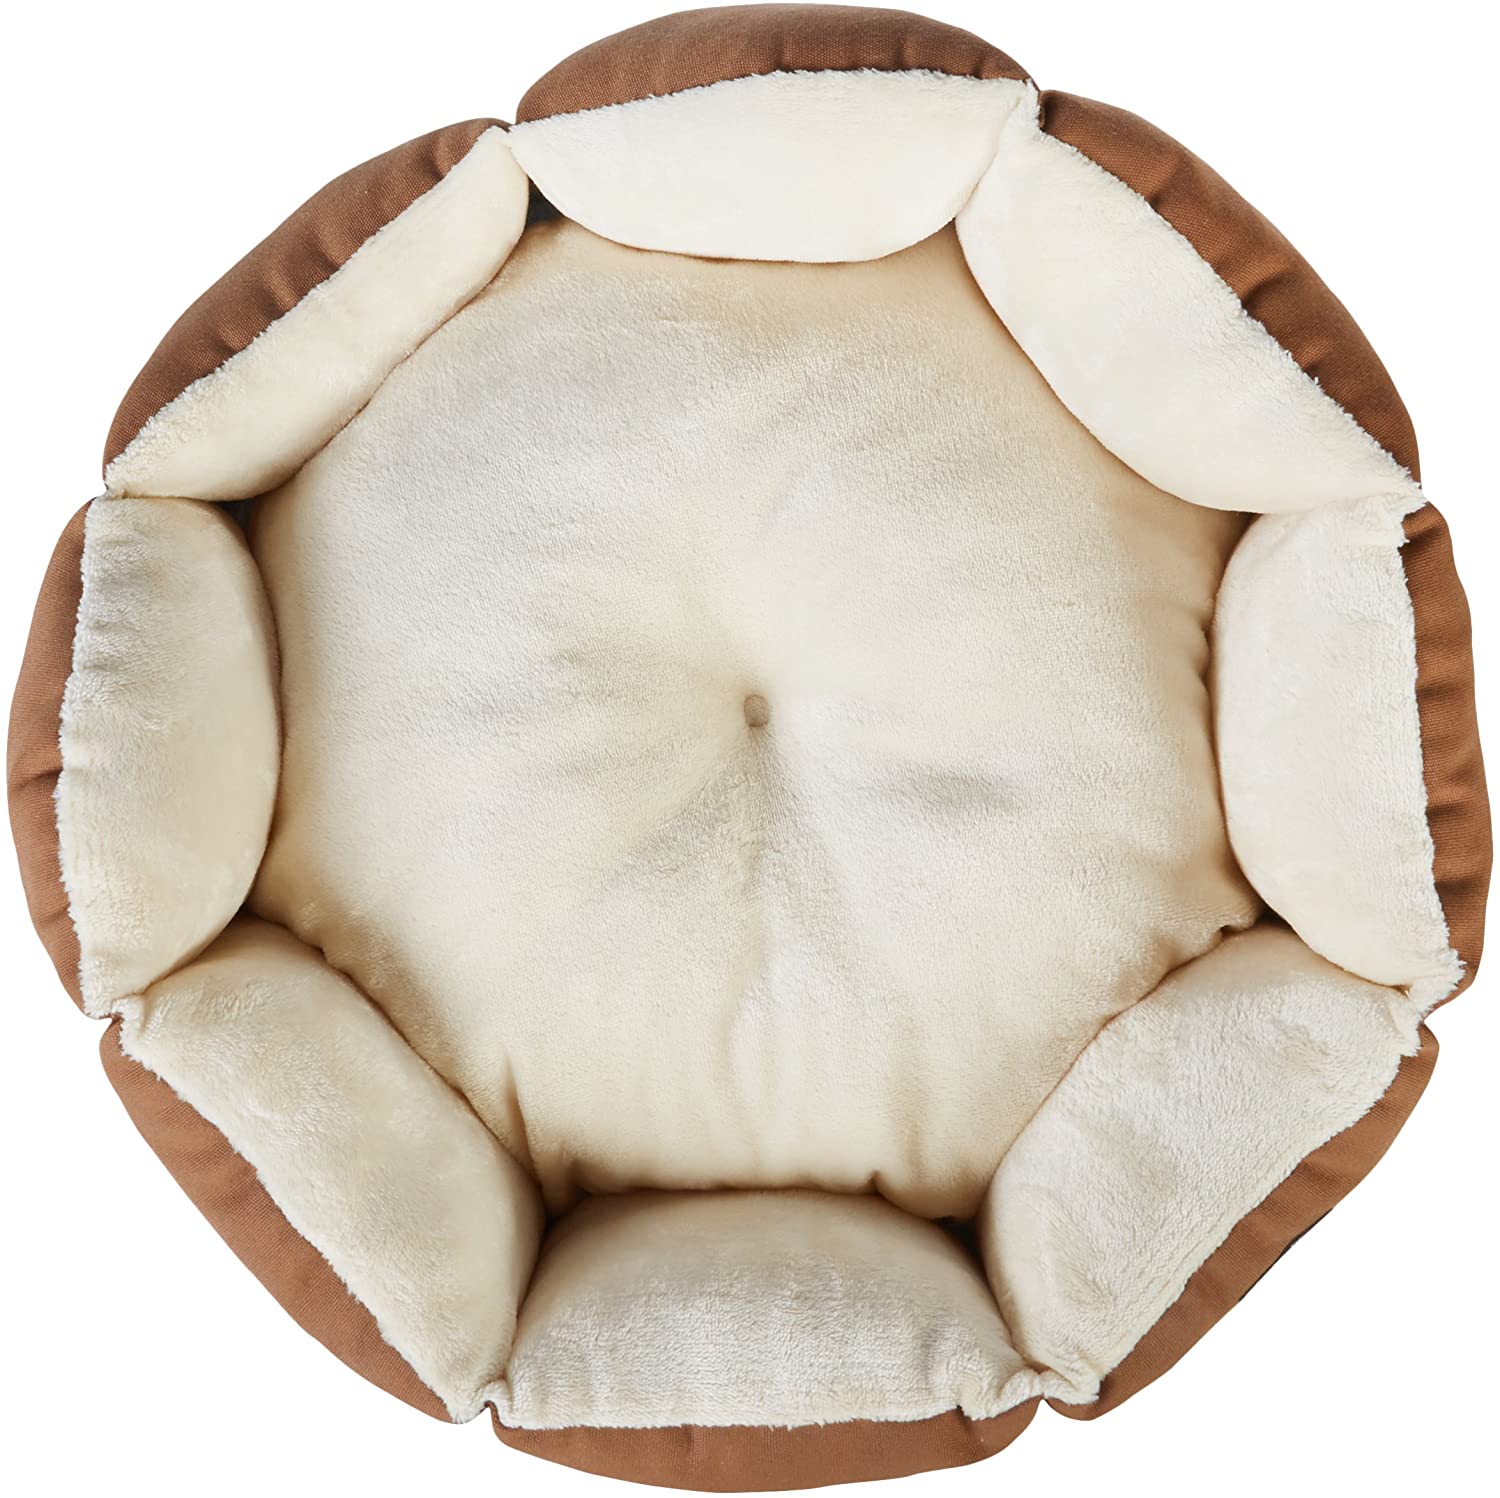  AmazonBasics – Cama octogonal para mascotas 